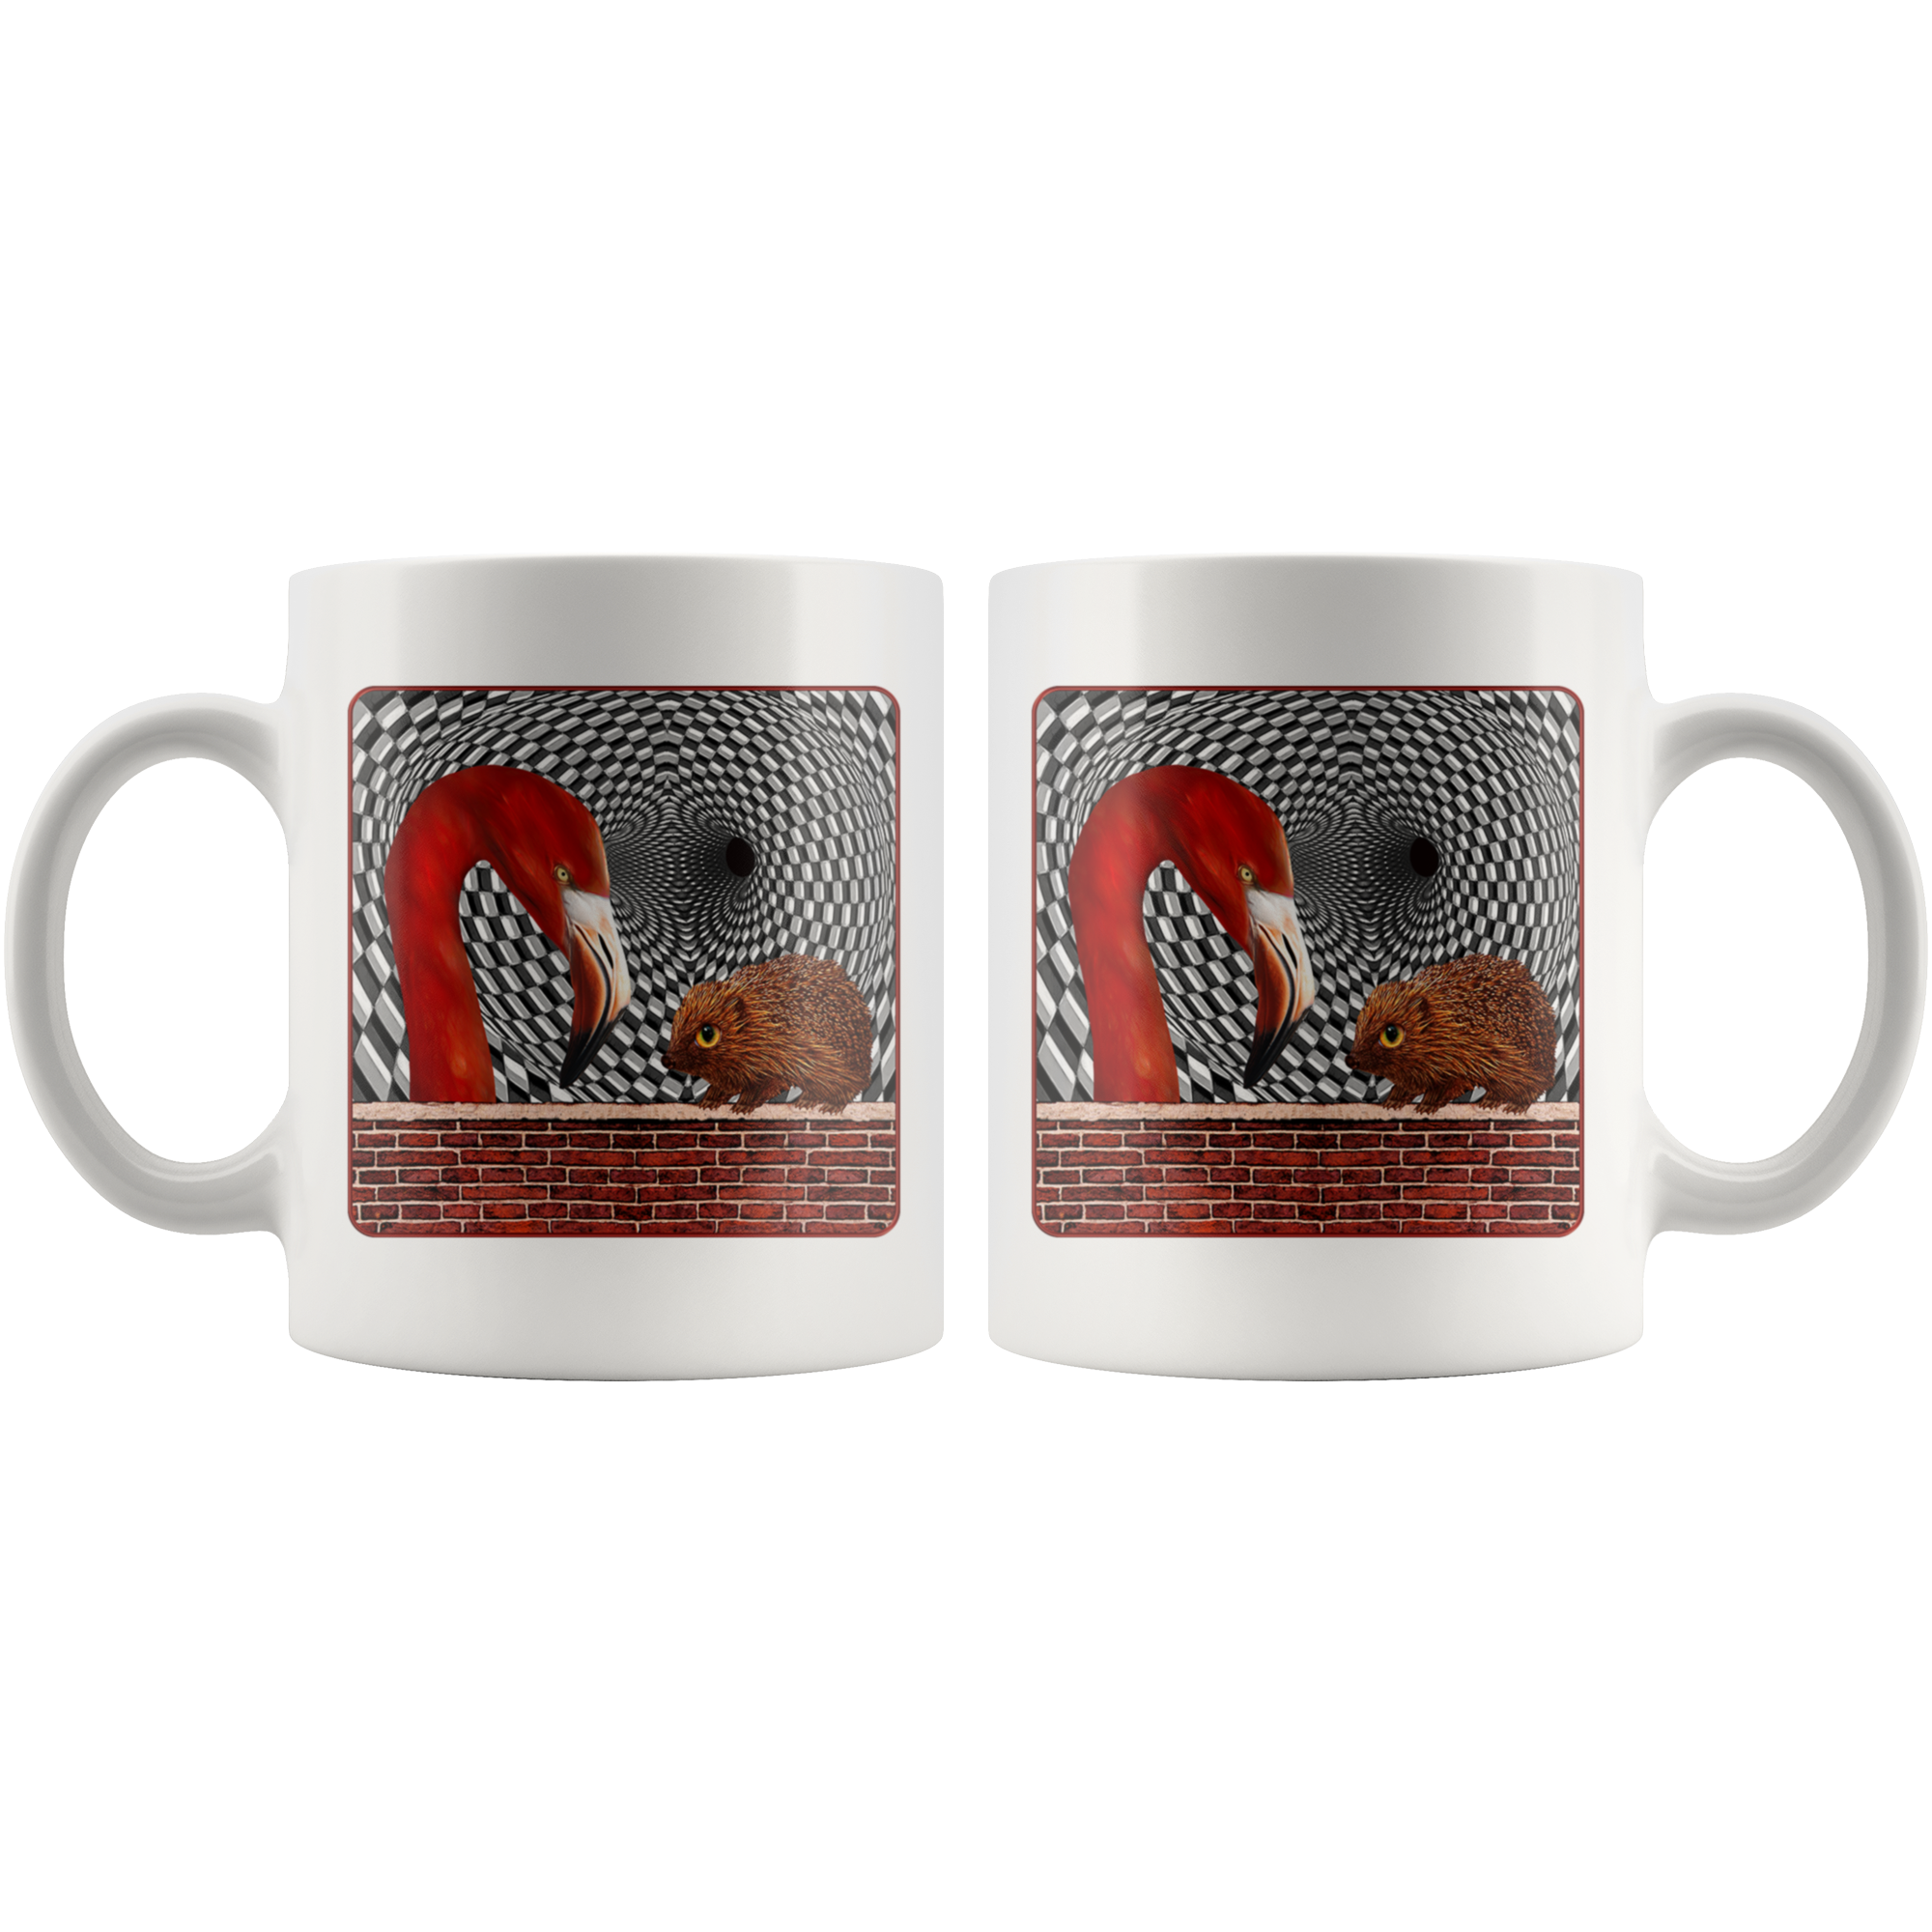 The Hedgehog And The Flamingo - 11 oz mug